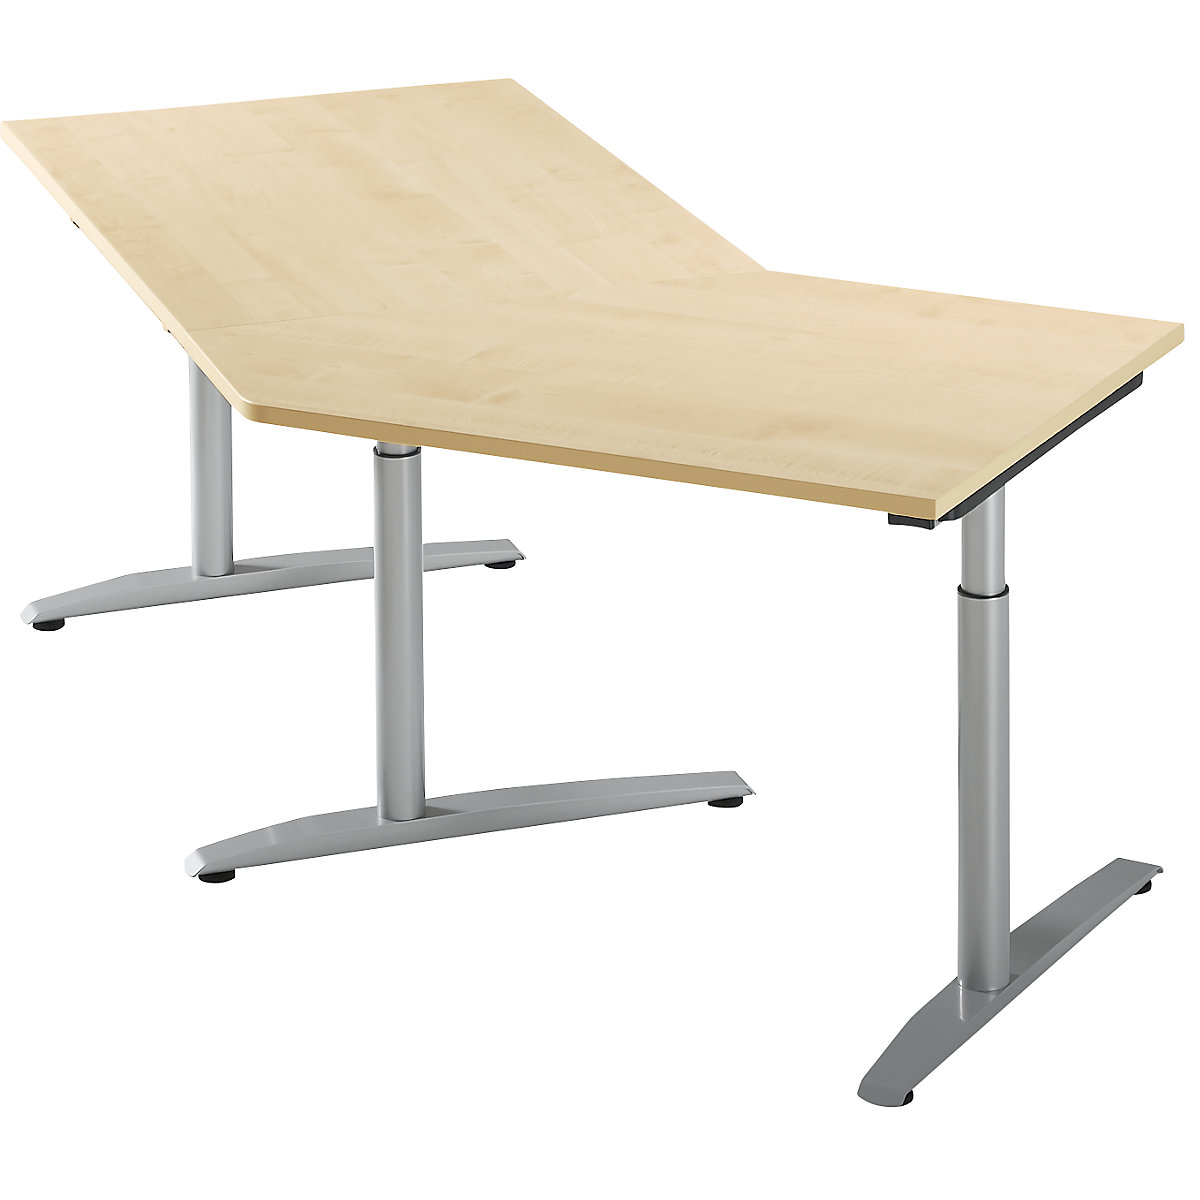 Přístavný stůl, výškově přestavitelný v rozsahu 650 – 850 mm HANNA